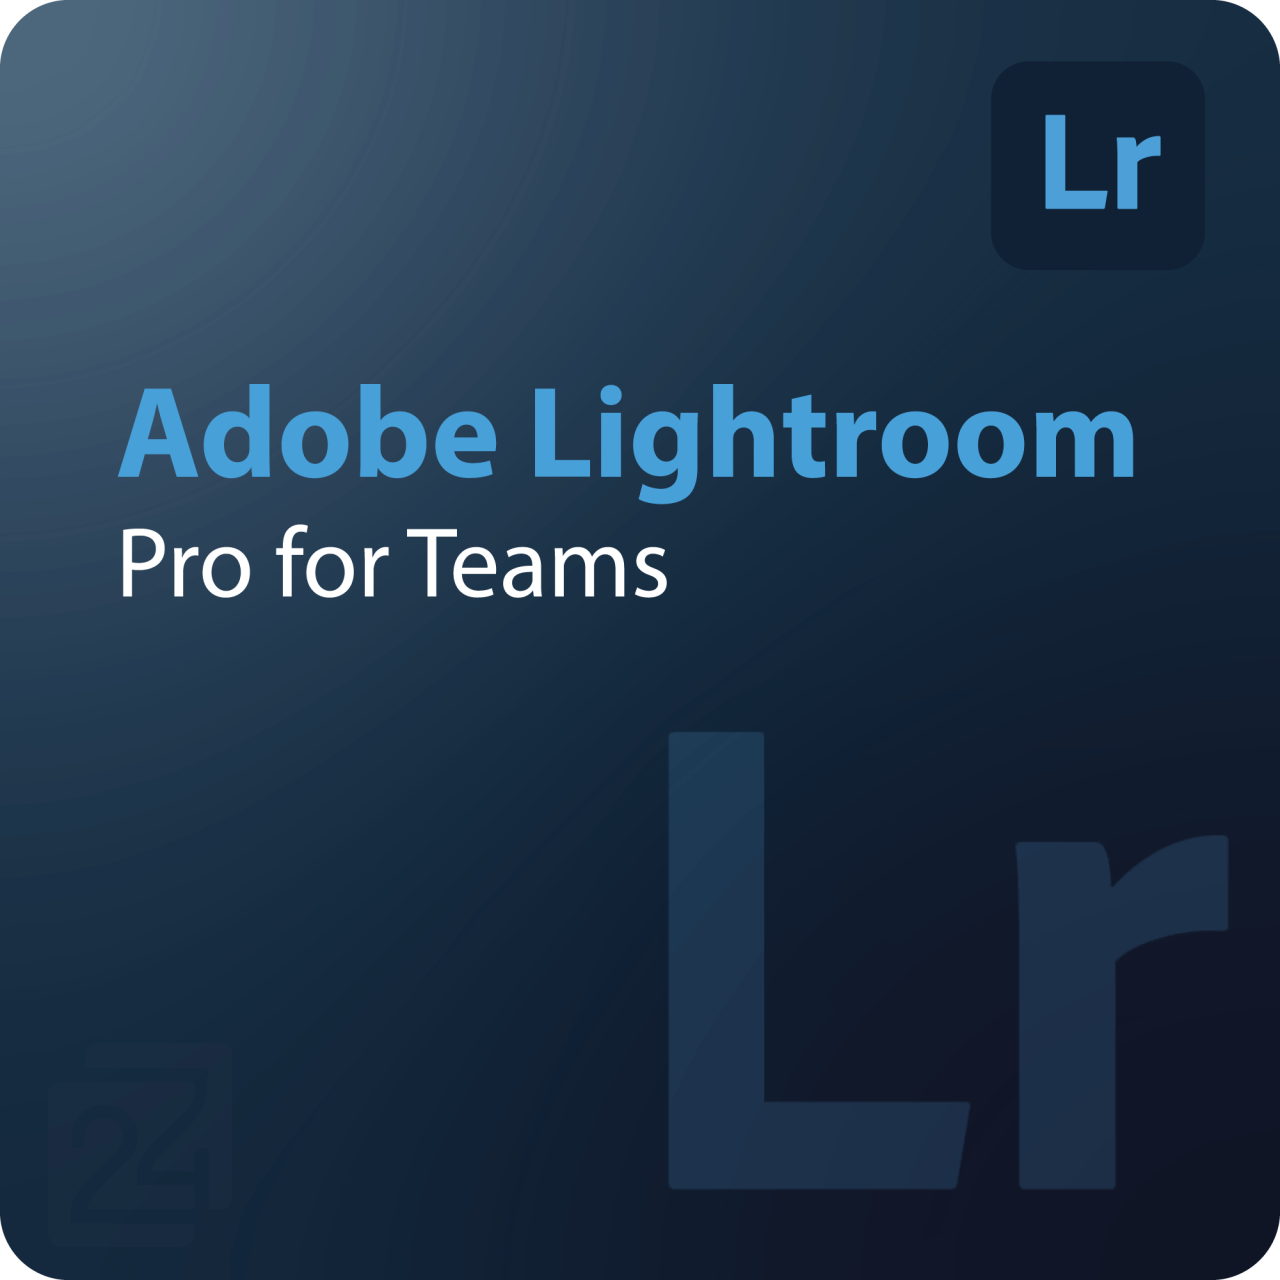 Adobe Lightroom - Pro for Teams